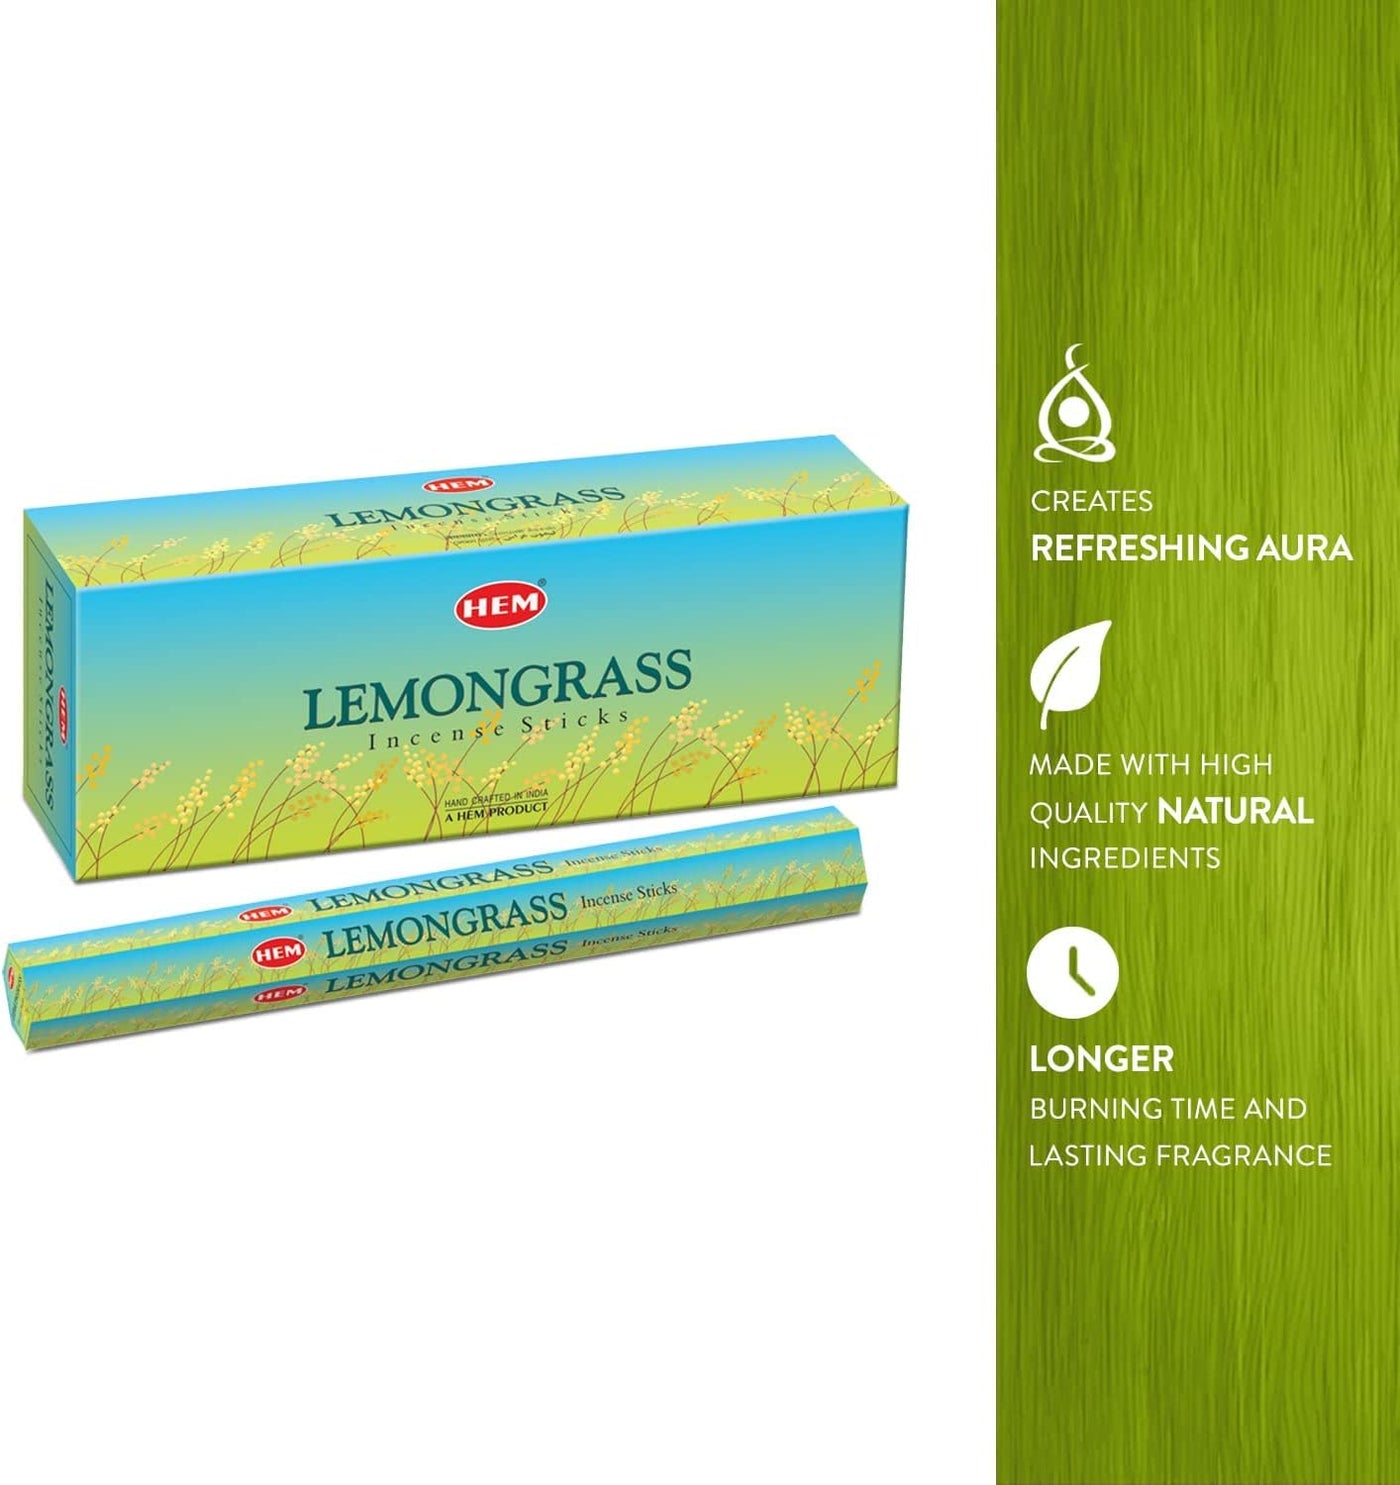 HEM Lemongrass Incense Sticks - Pack of 6 (20 Sticks Each) Scented Sticks for Relaxing & Meditation